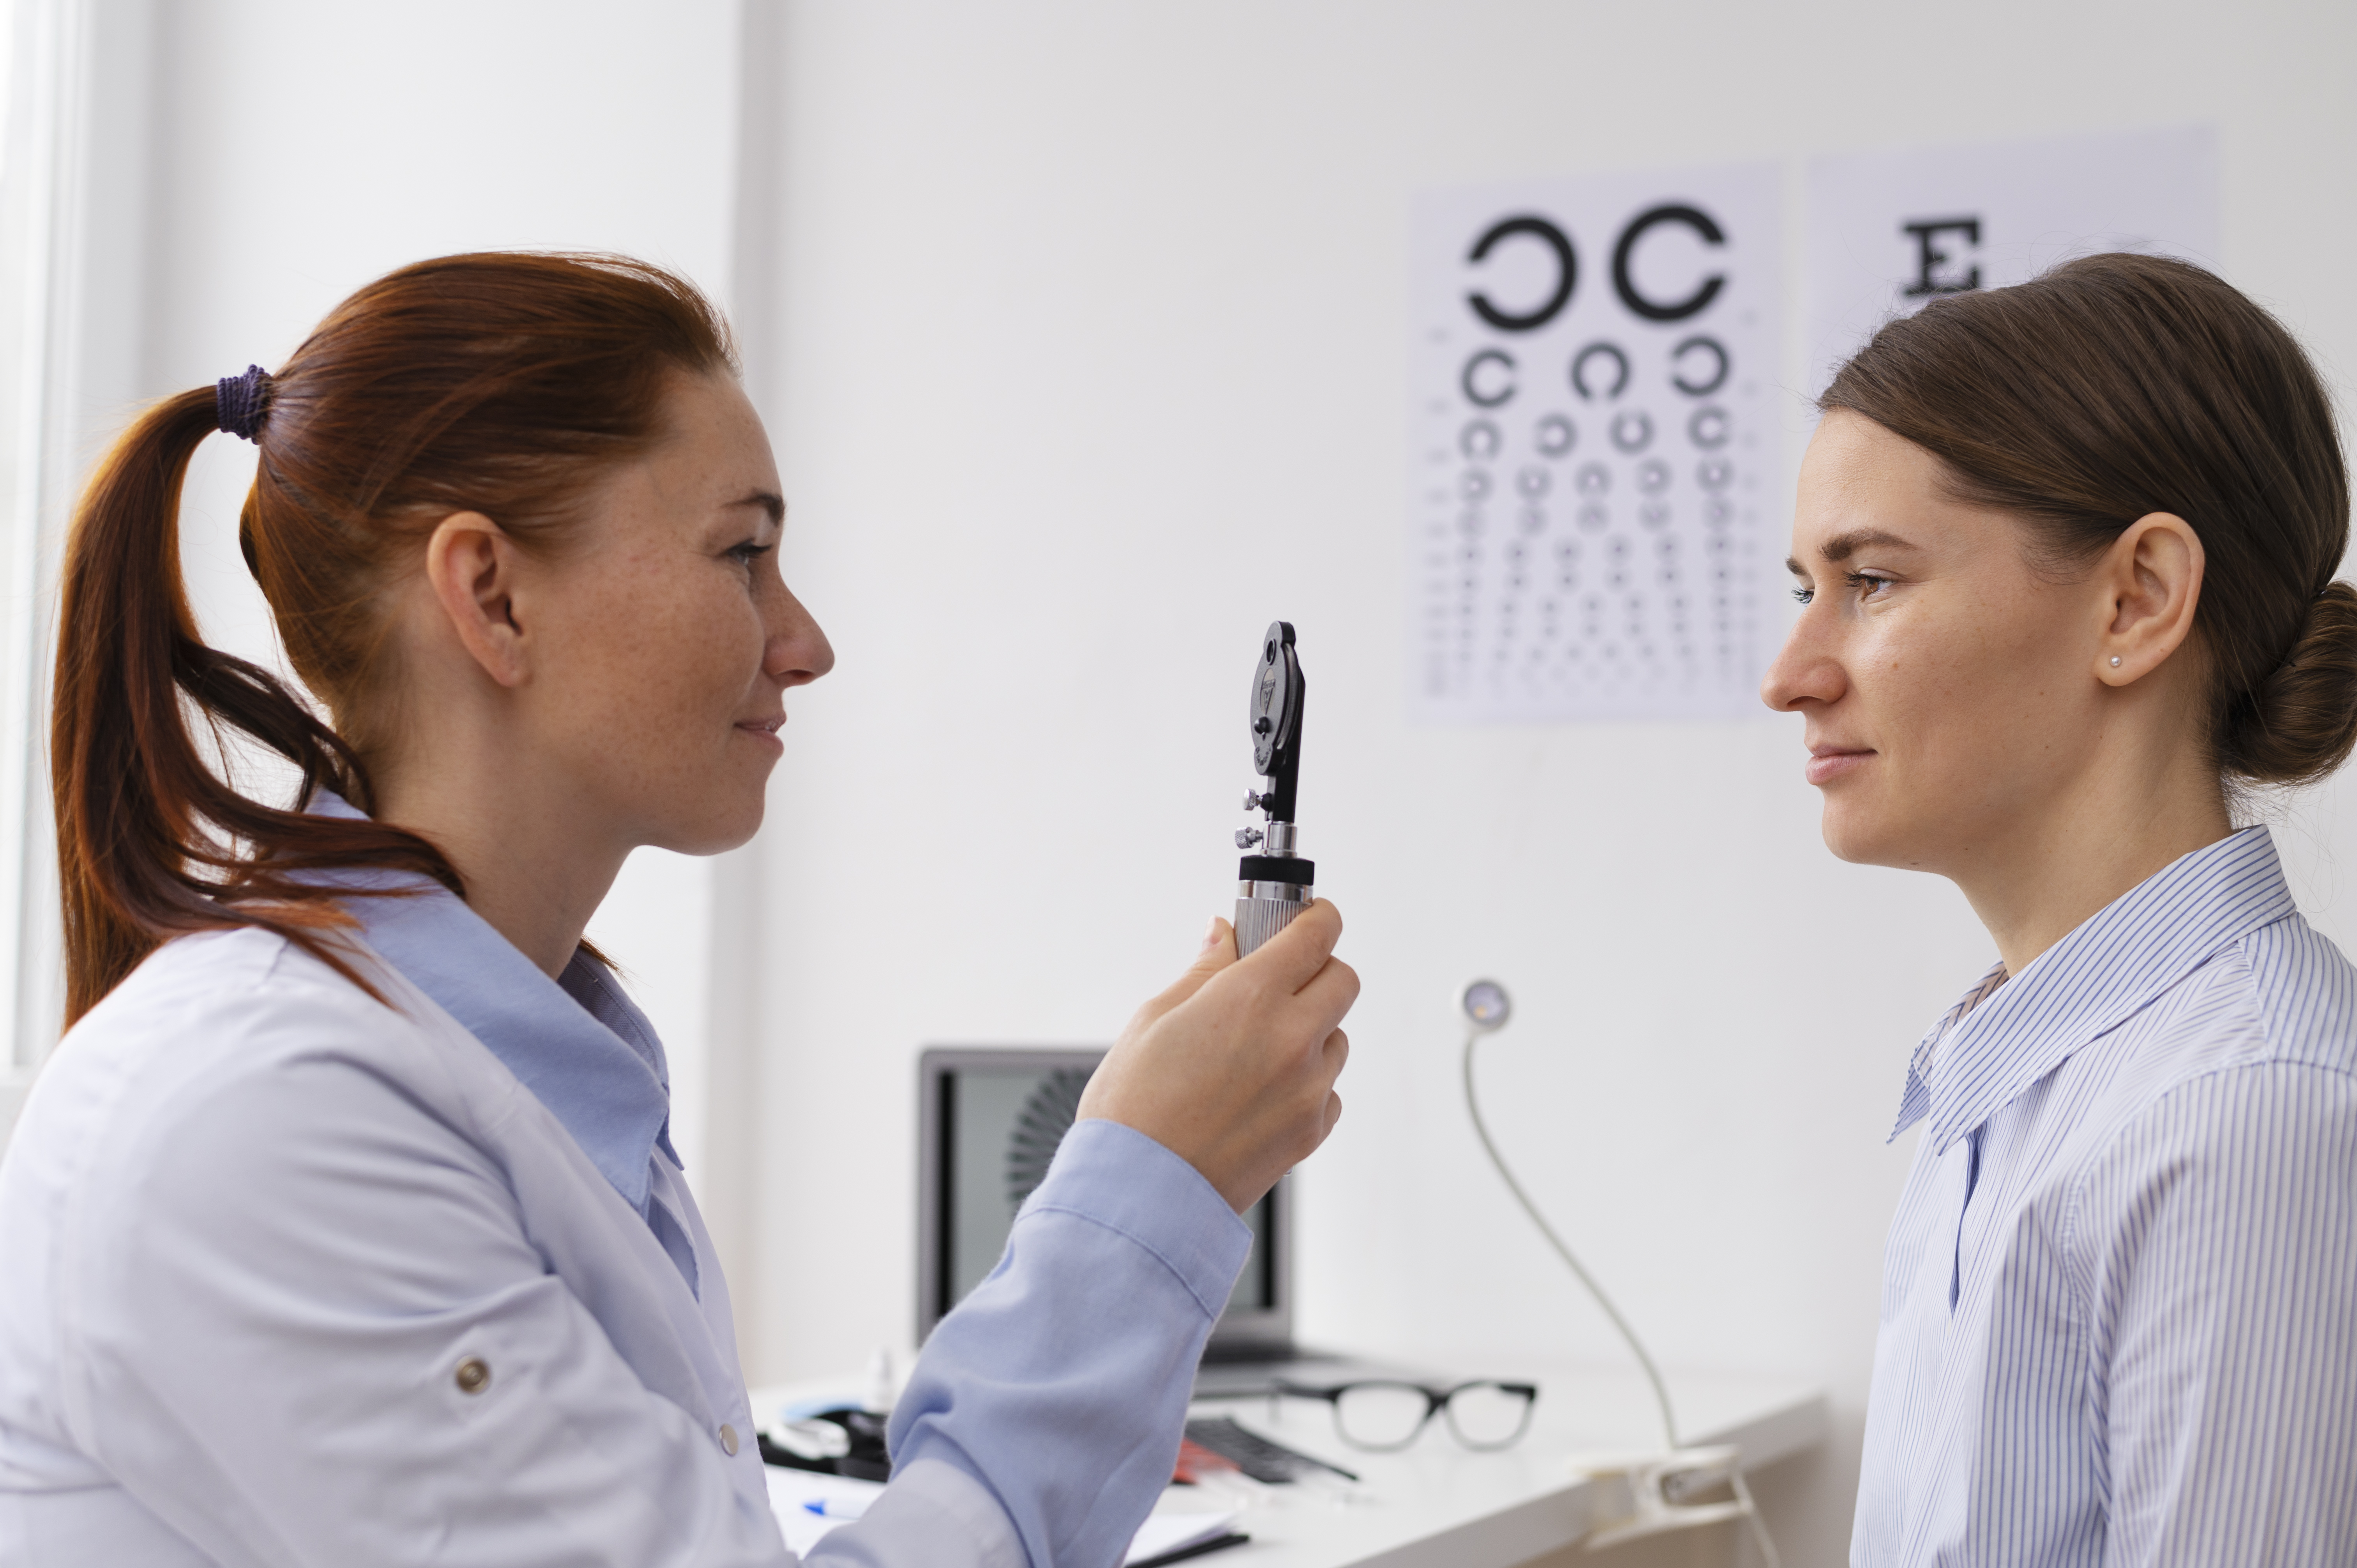 67 новых заявок: как офтальмологической клинике удалось их получить?